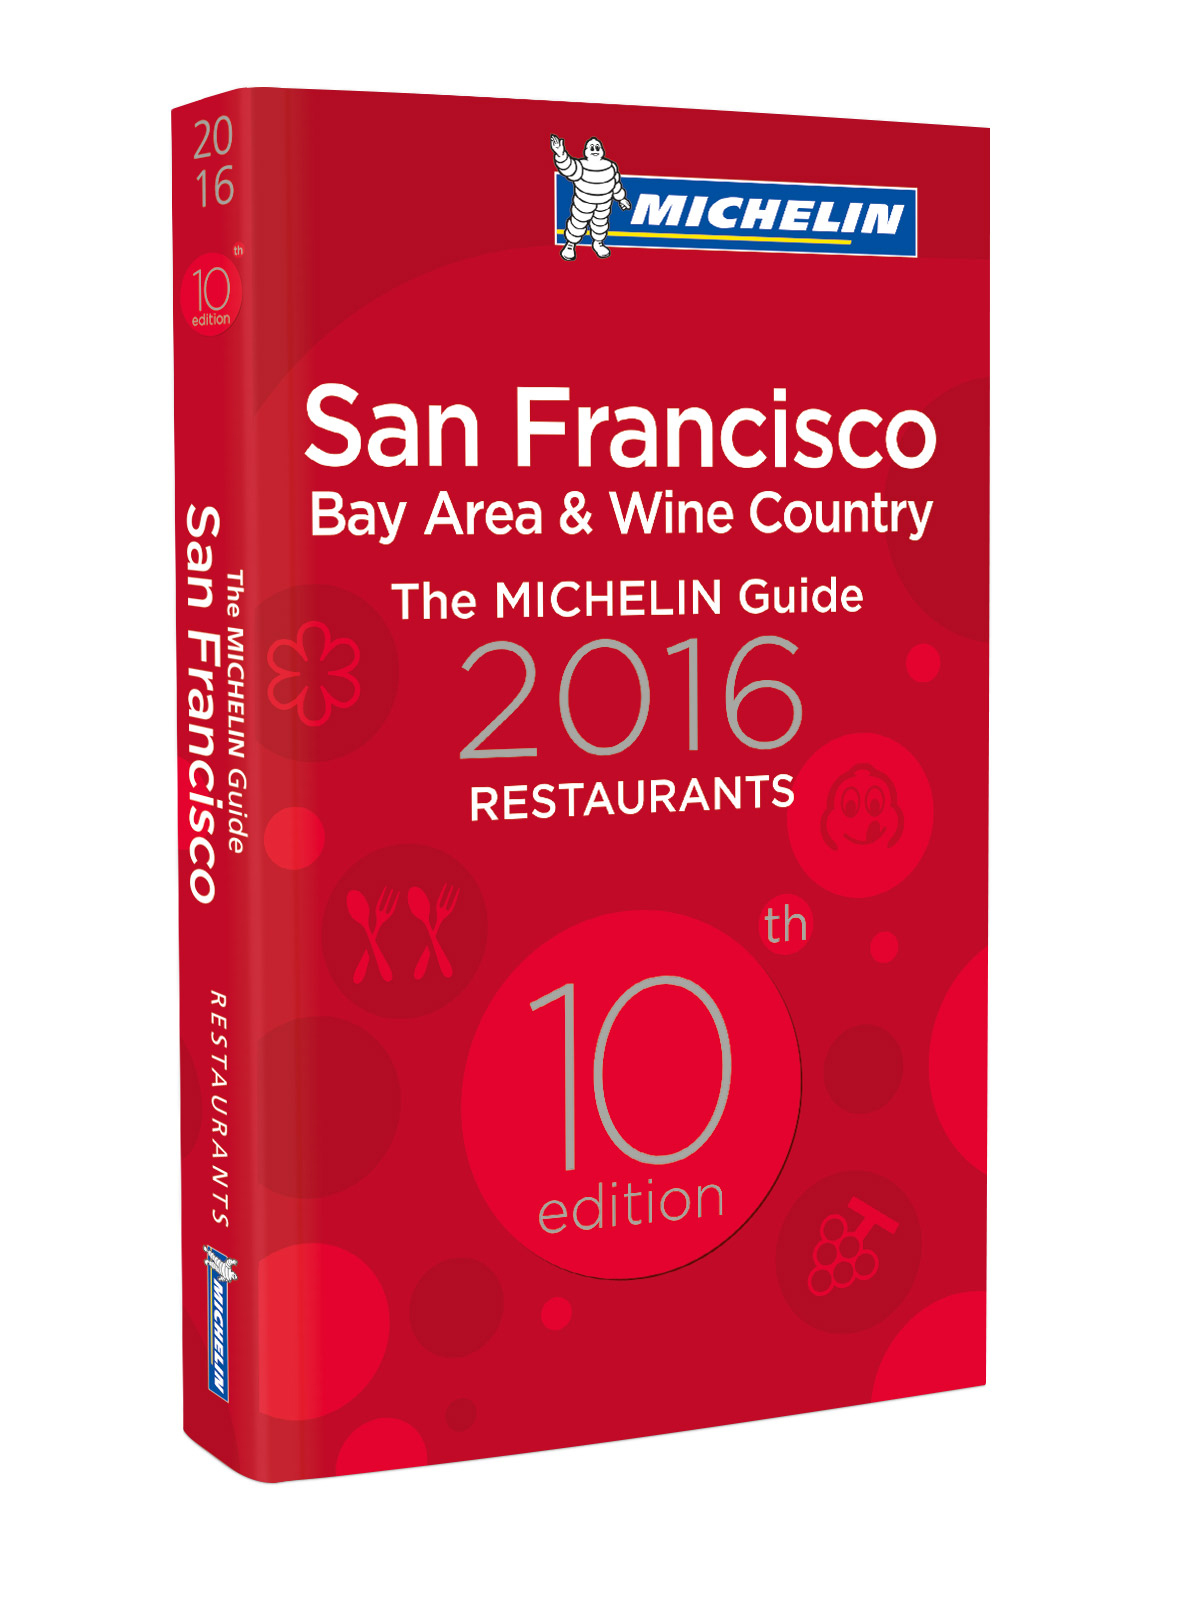 La guía MICHELIN San Francisco Bay Area & Wine Country 2016